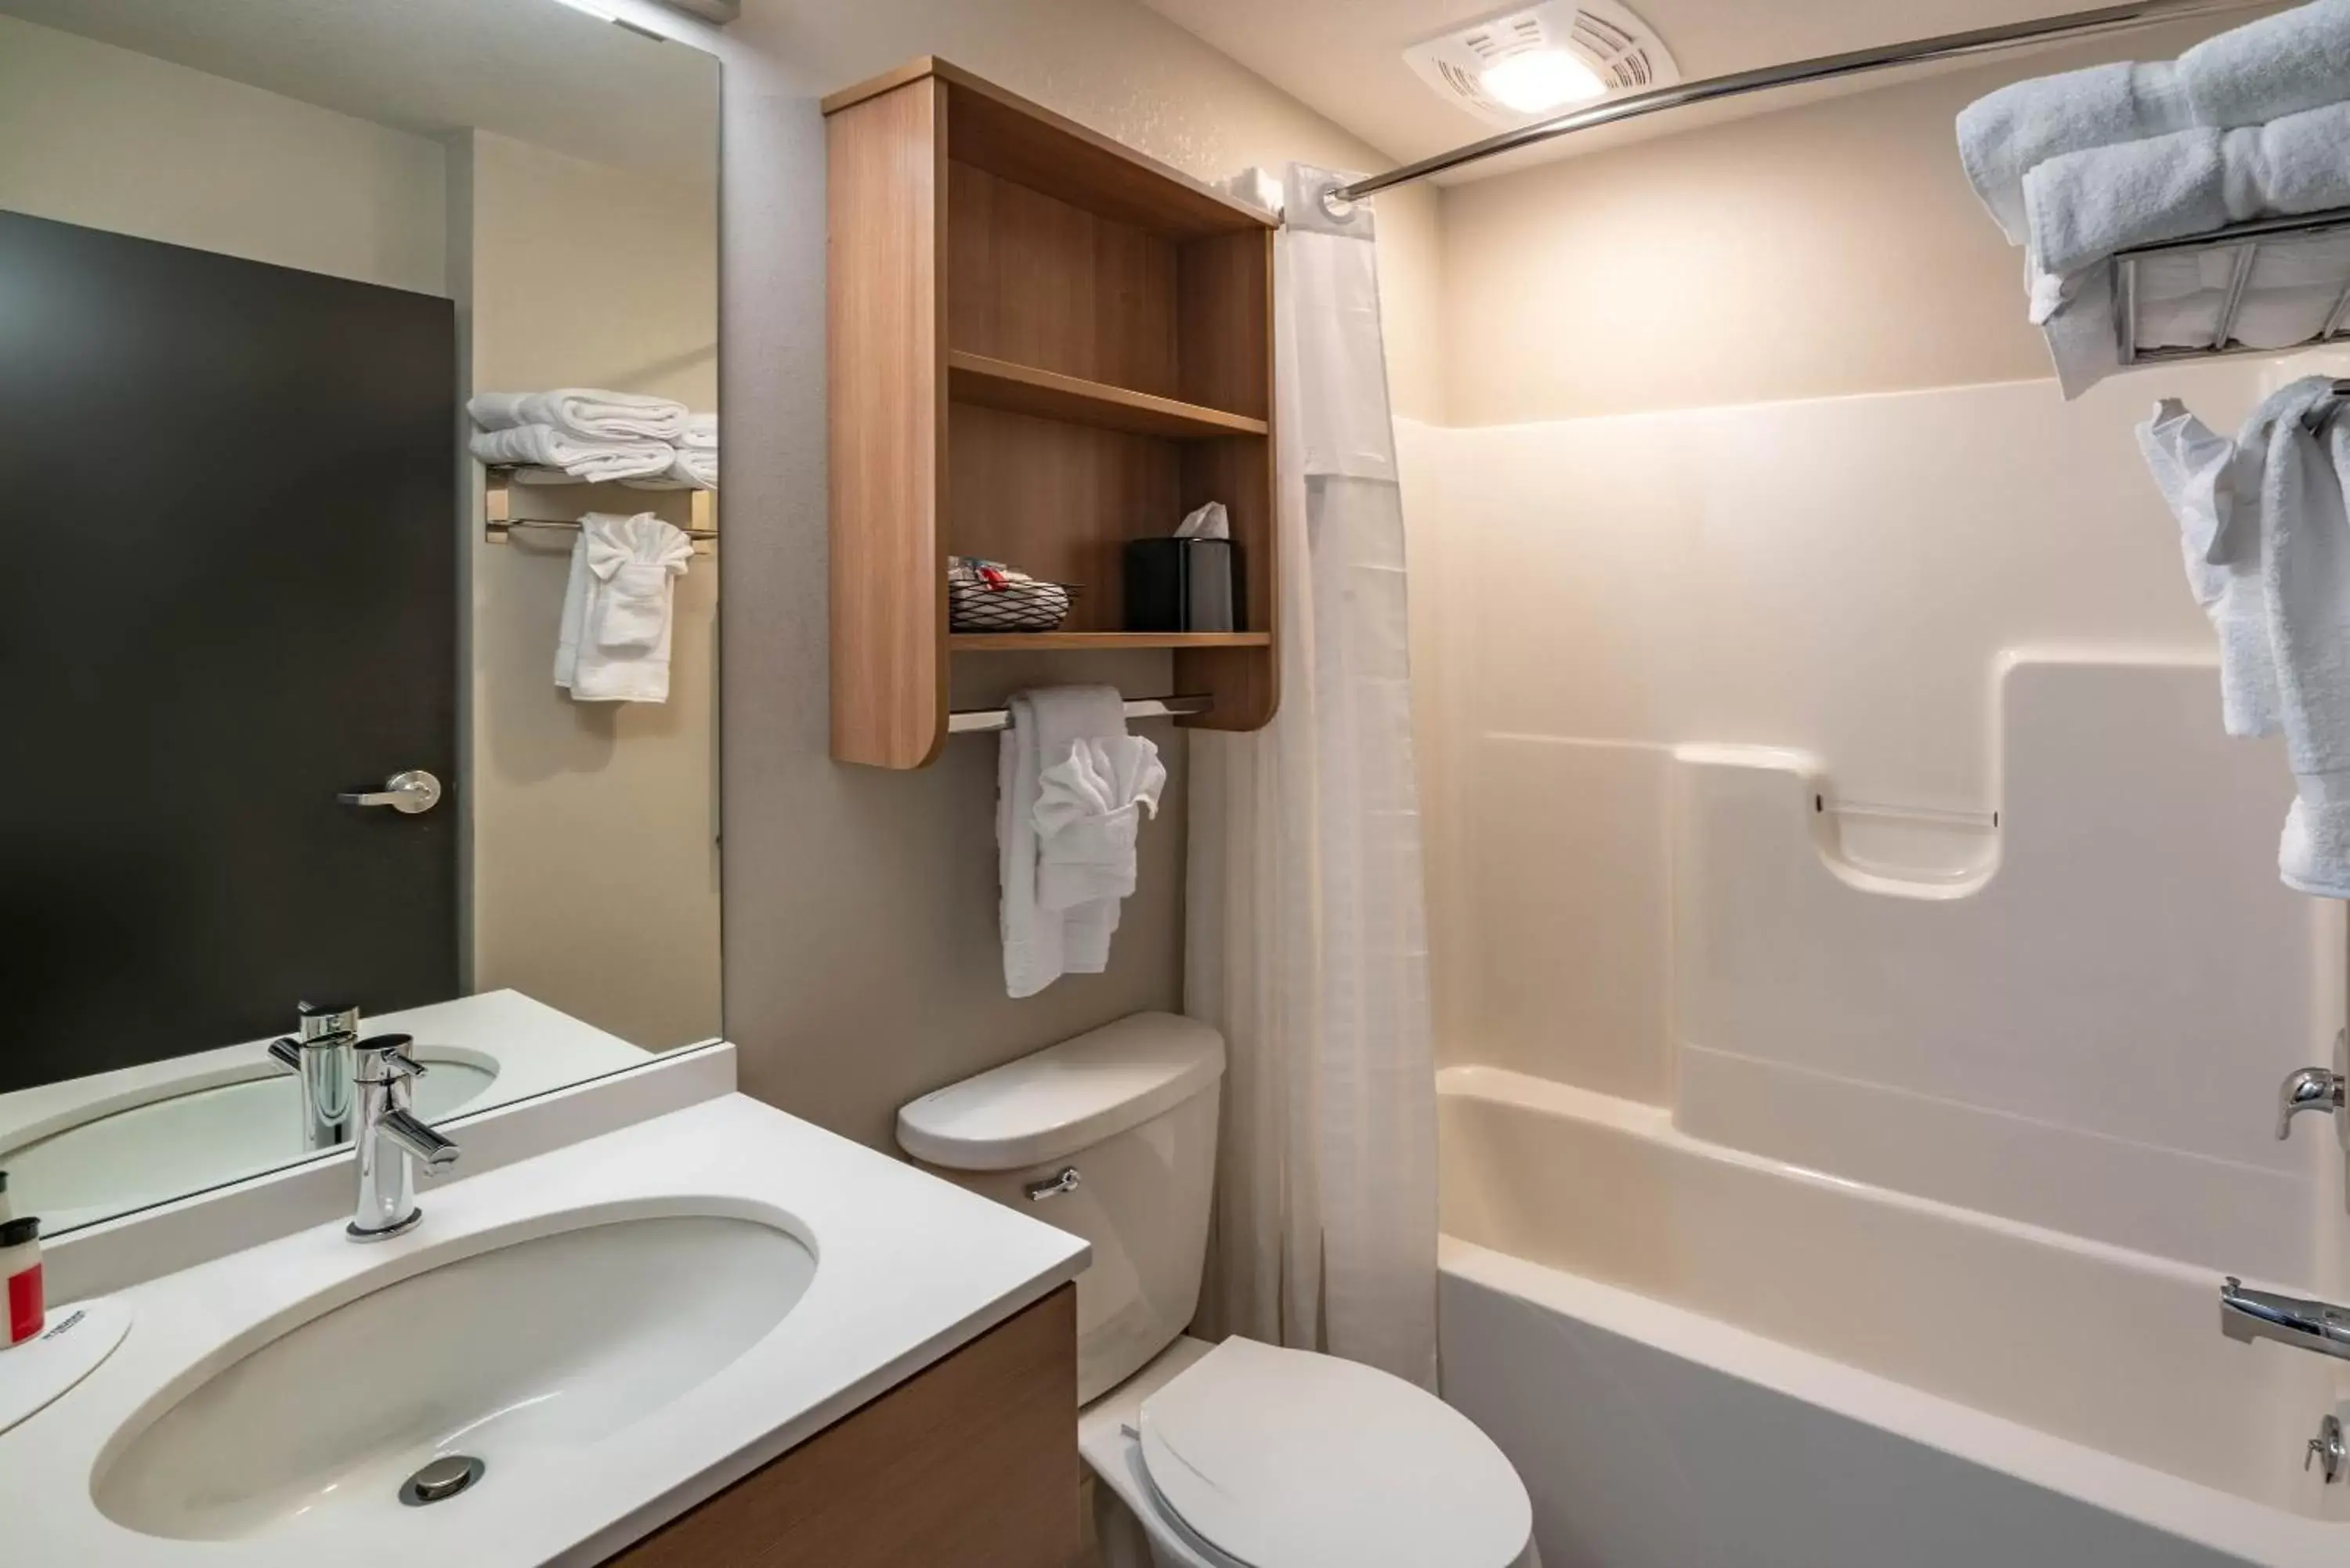 Toilet, Bathroom in Microtel Inn & Suites by Wyndham Carlisle